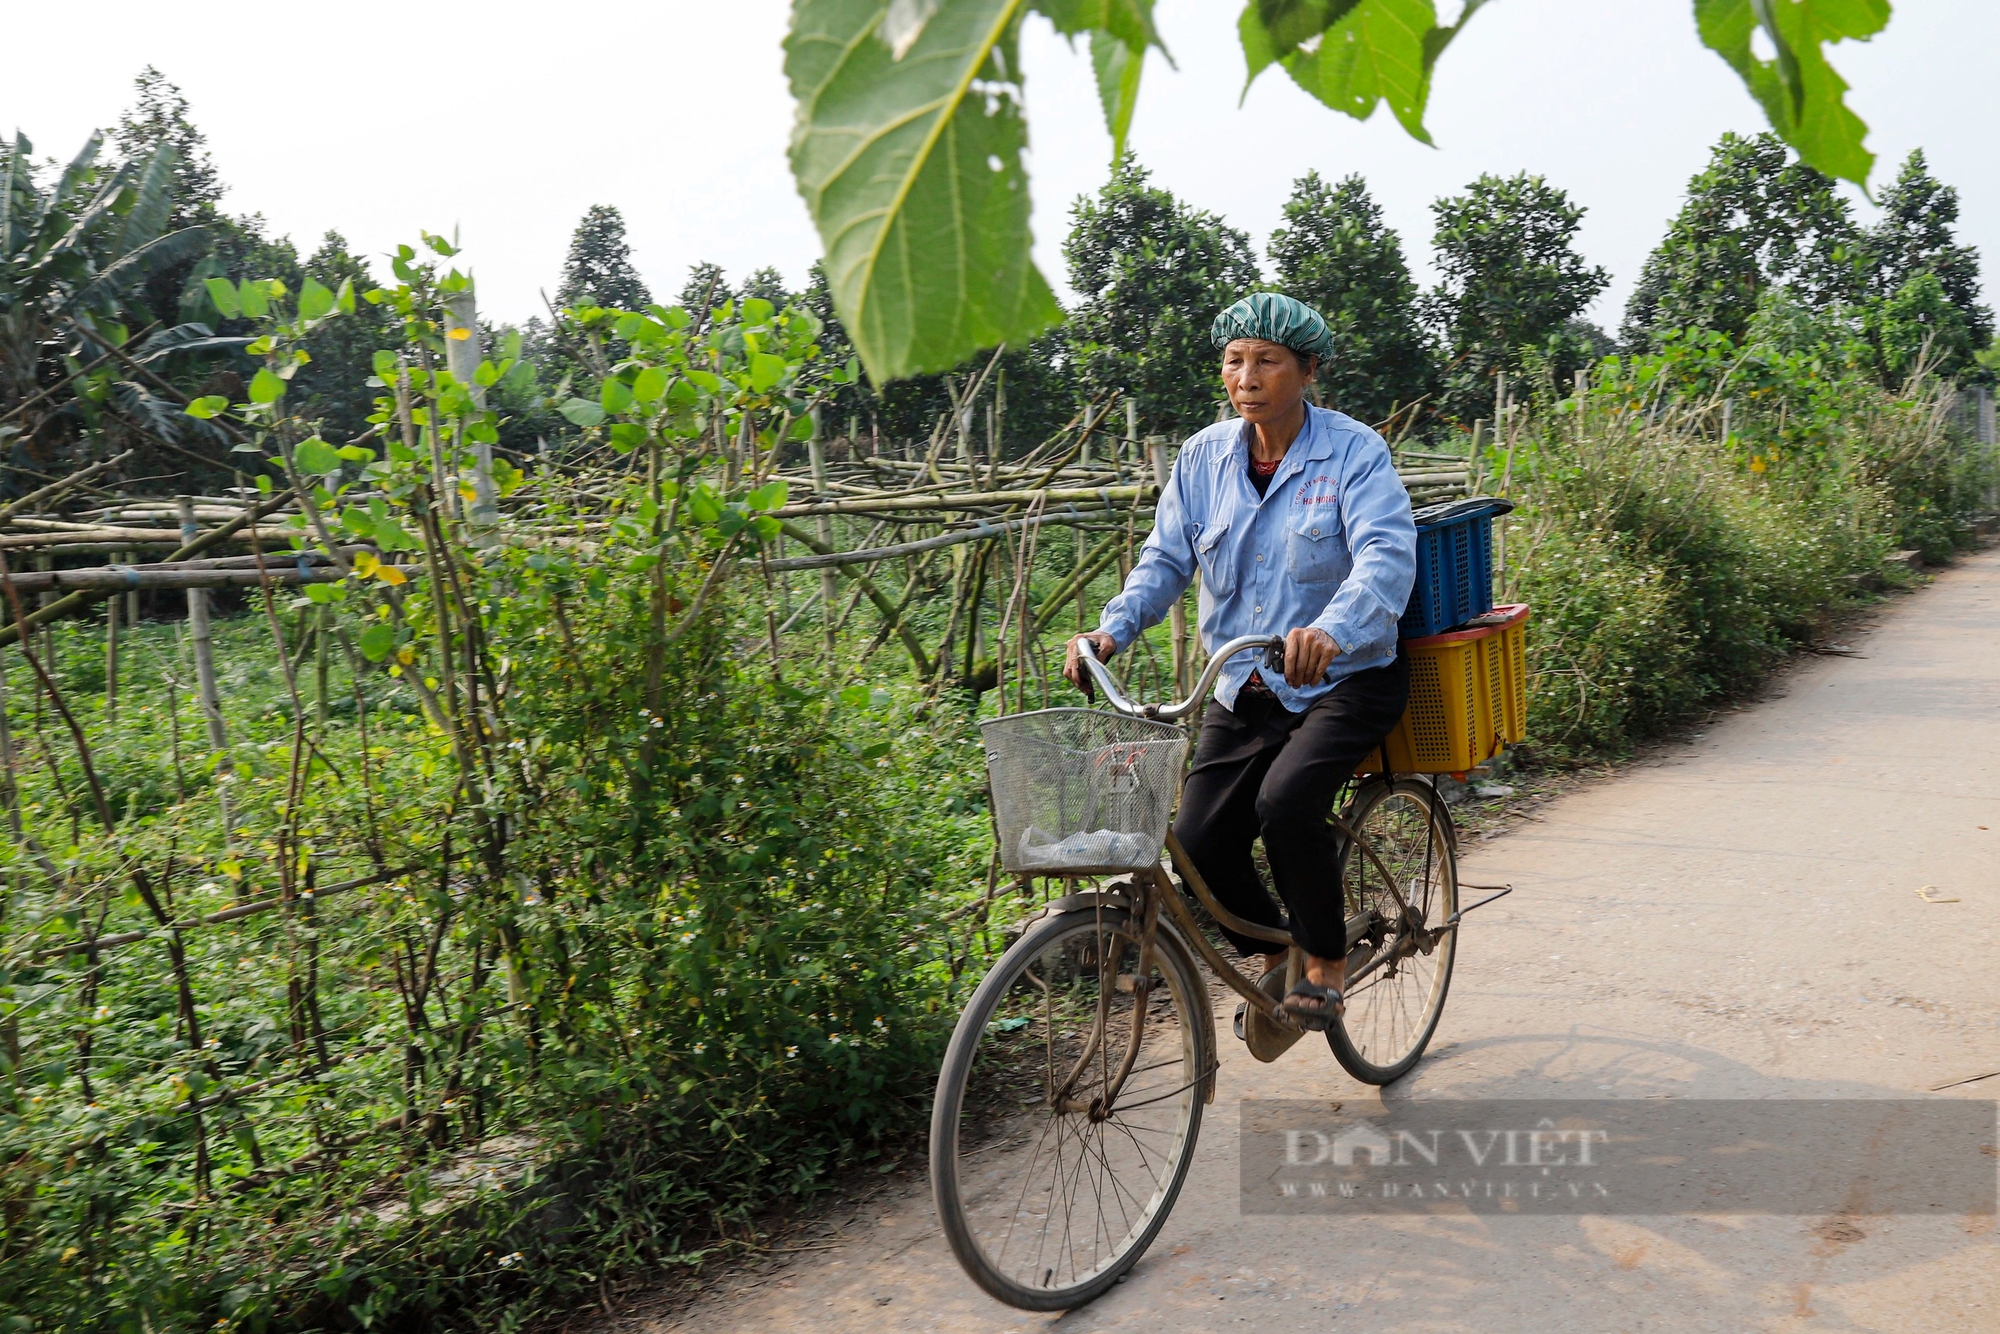 Dâu tằm chín trĩu cành, nông dân ngoại thành Hà Nội hối hả thu hoạch xuyên trưa để kịp giao cho thương lái- Ảnh 10.